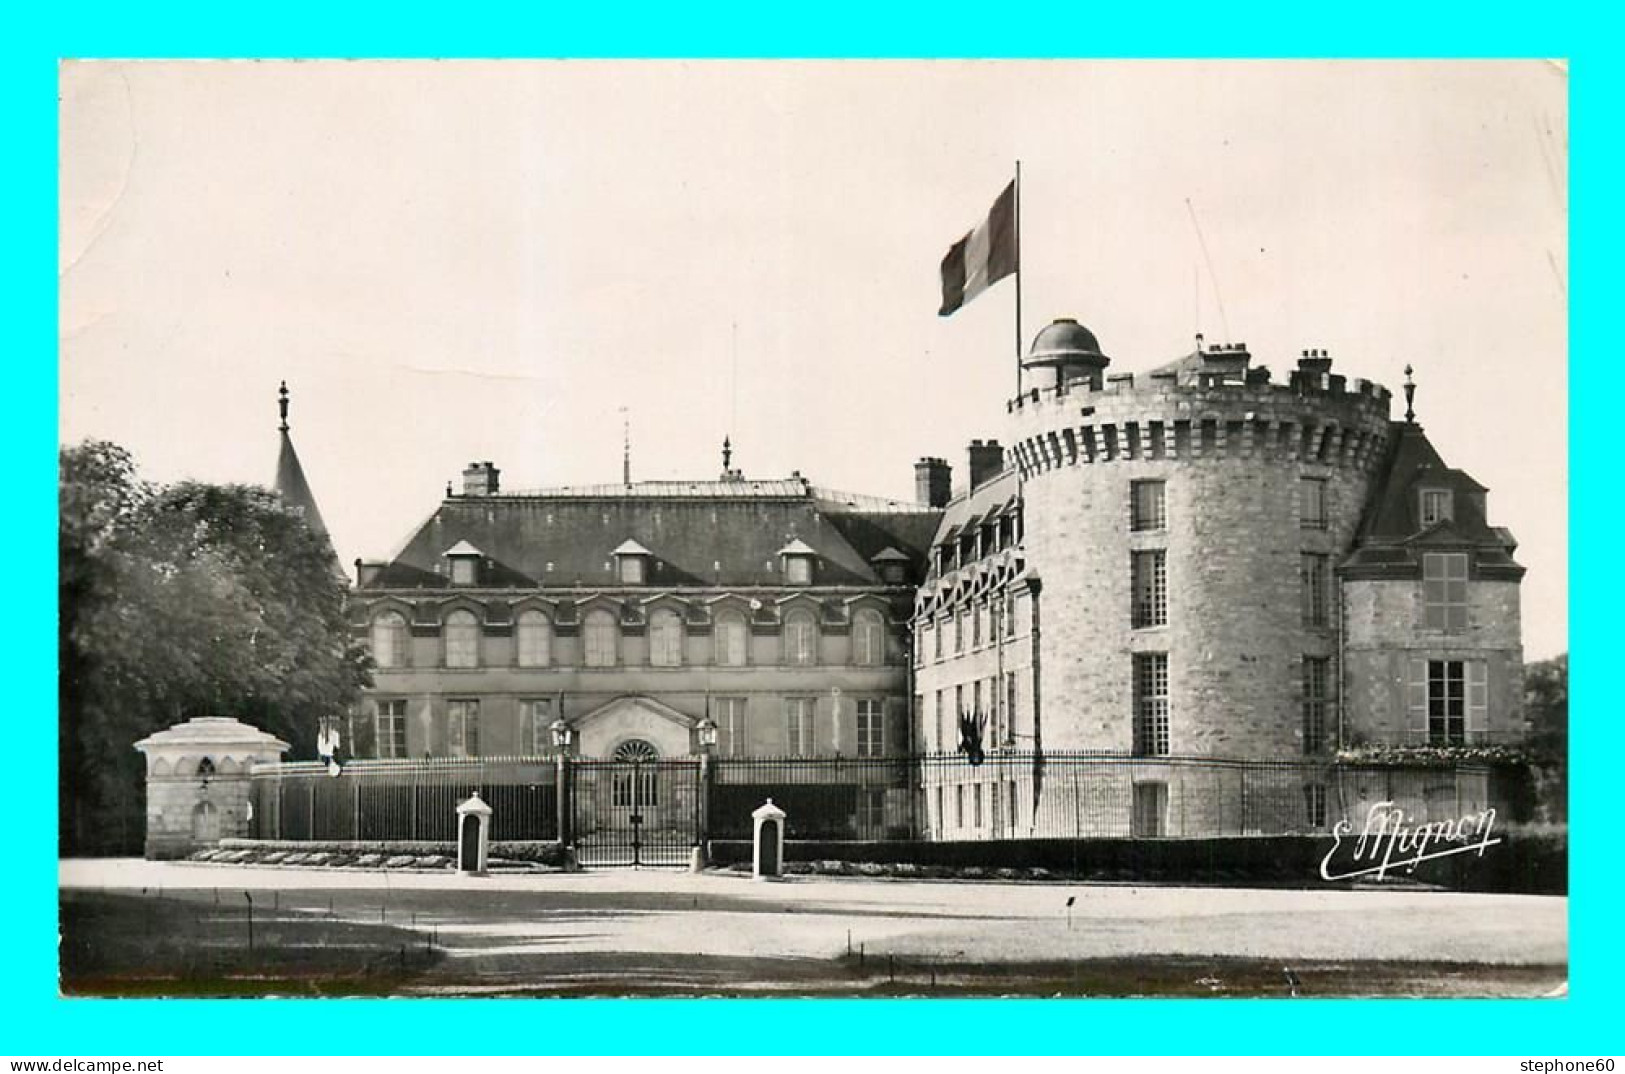 A871 / 585 78 - RAMBOUILLET Chateau Cour D 'Honneur - Rambouillet (Kasteel)